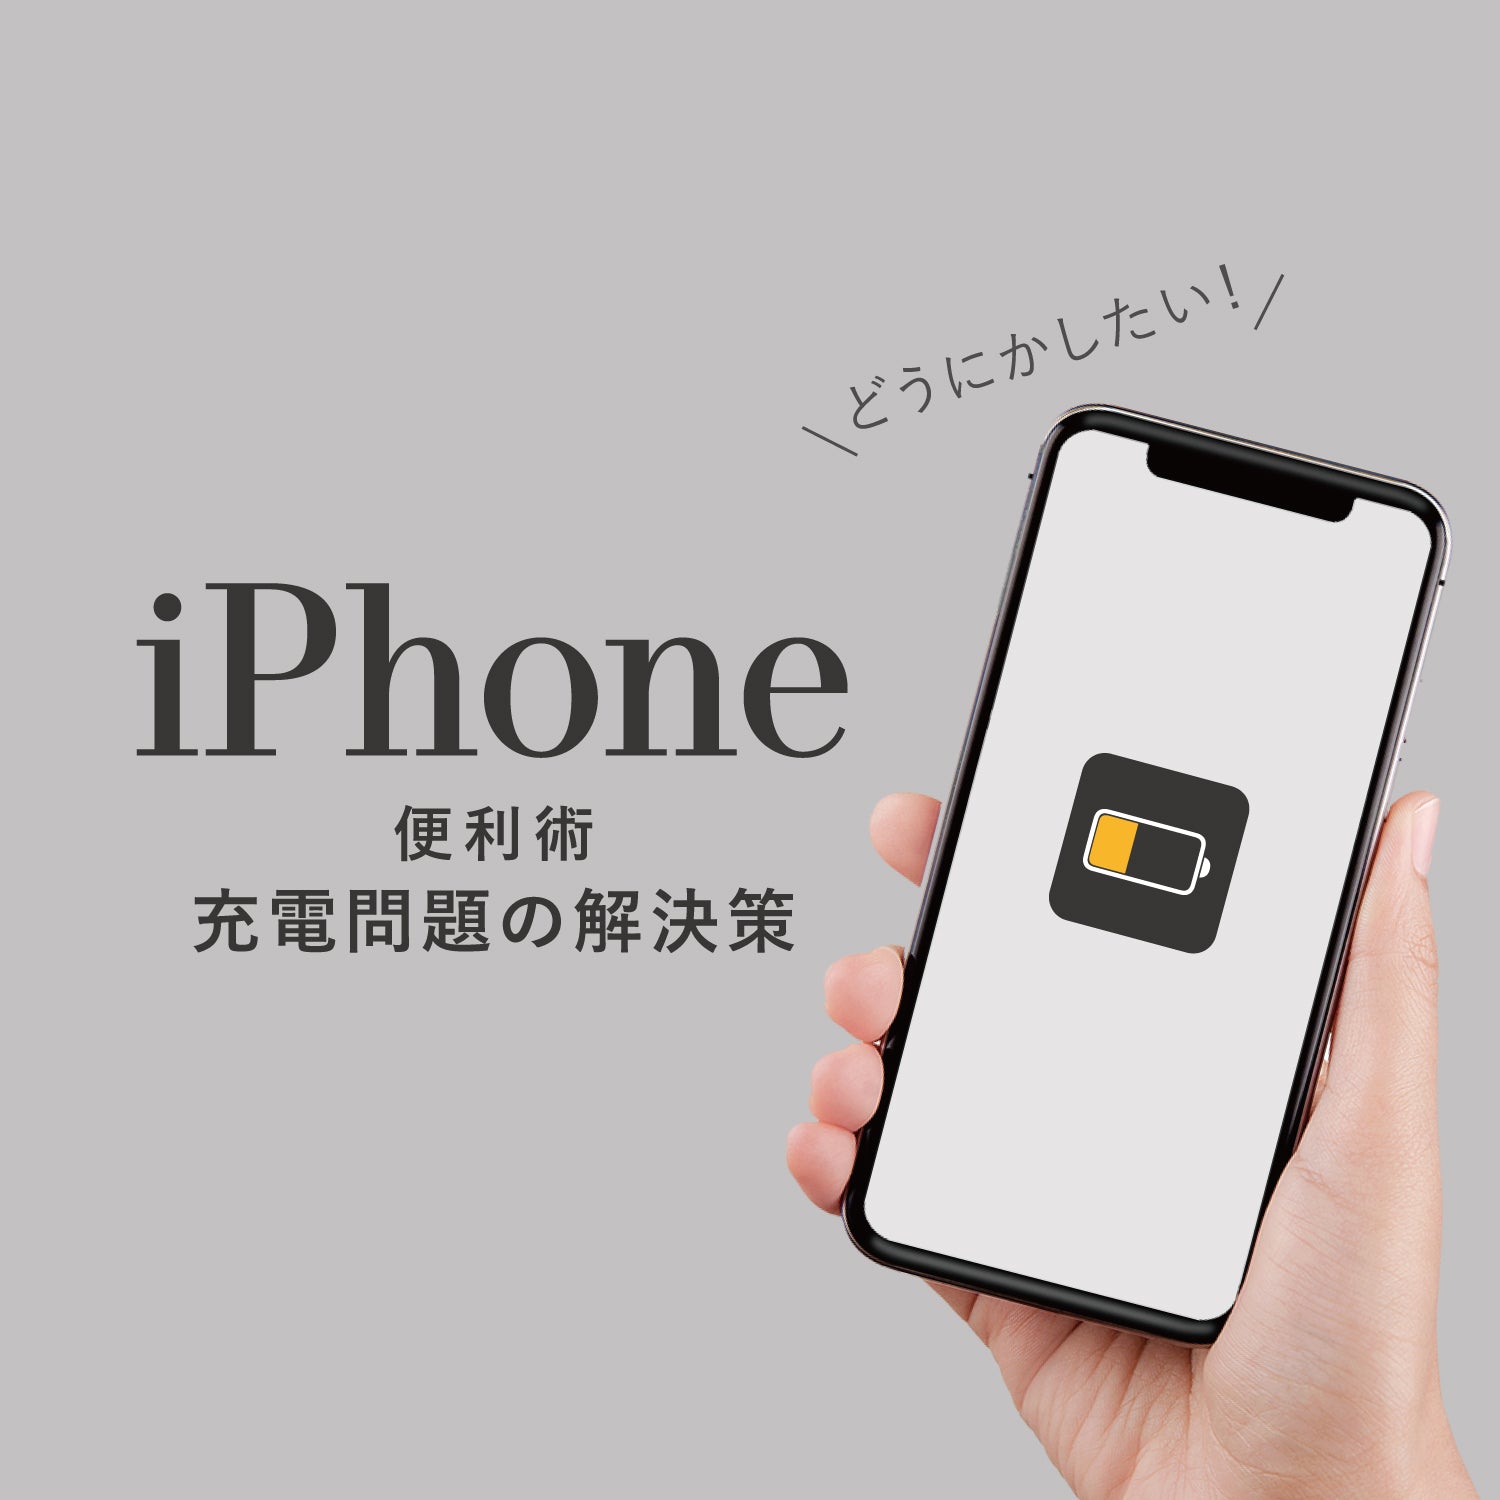 【iPhone便利術】充電問題の解決策